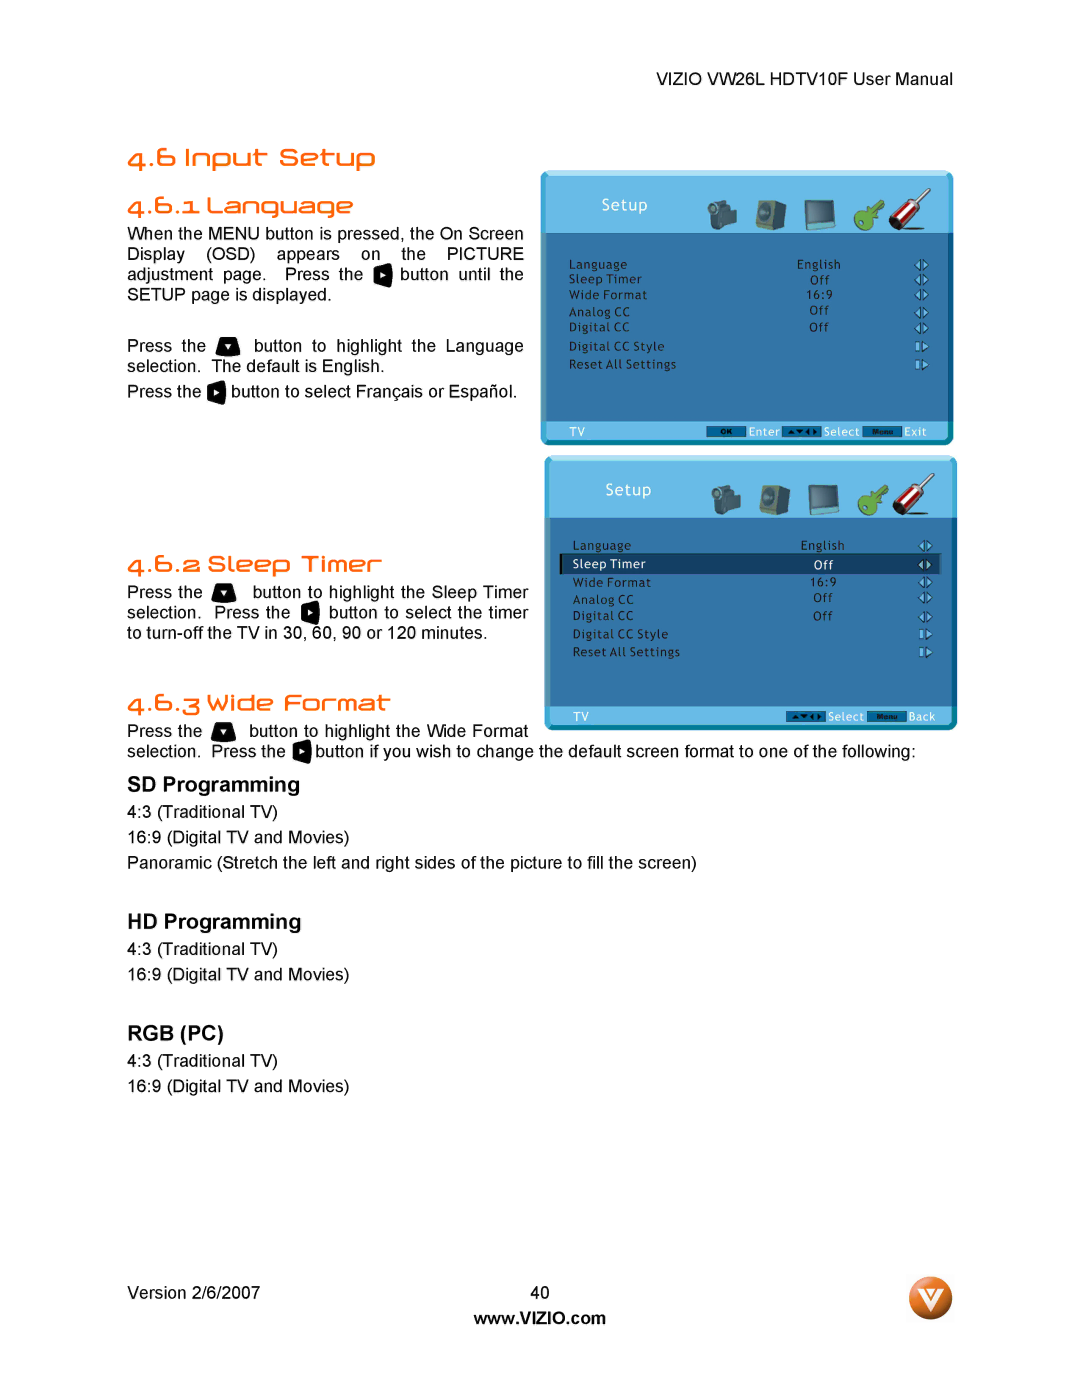 Vizio VW26L user manual Input Setup, Language, Sleep Timer, Wide Format 